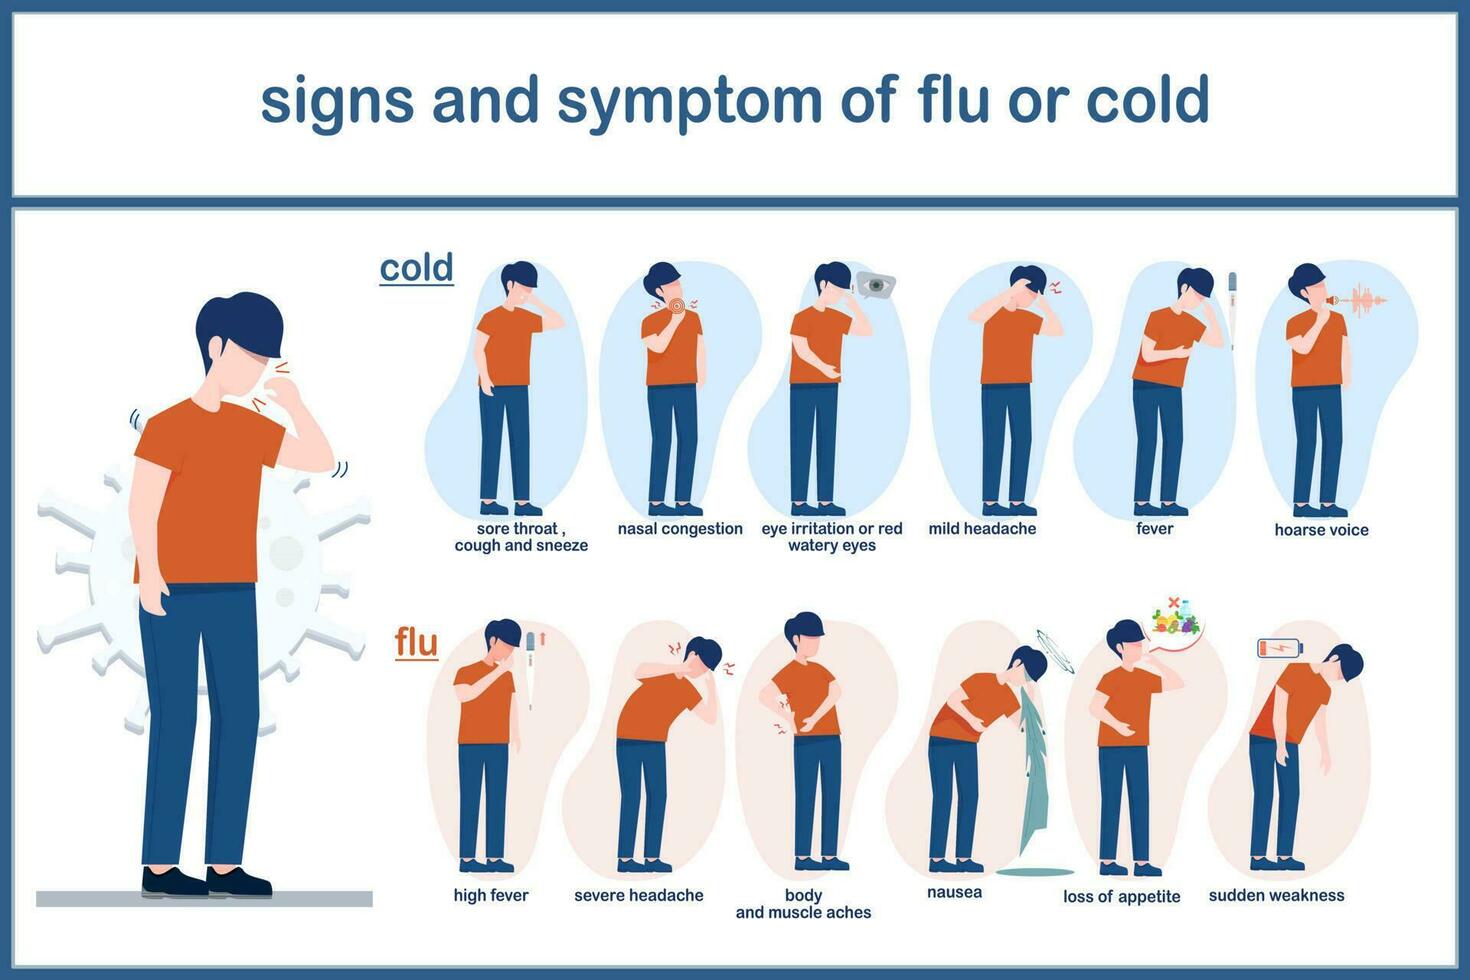 verschil van symptomen tussen gemeenschappelijk verkoudheid en griep, volwassen Mens vervelend oranje overhemd en donker blauw broek in verschillend symptomen wanneer hebben verkoudheid en griep. vector illustratie concept voor Gezondheid zorg.